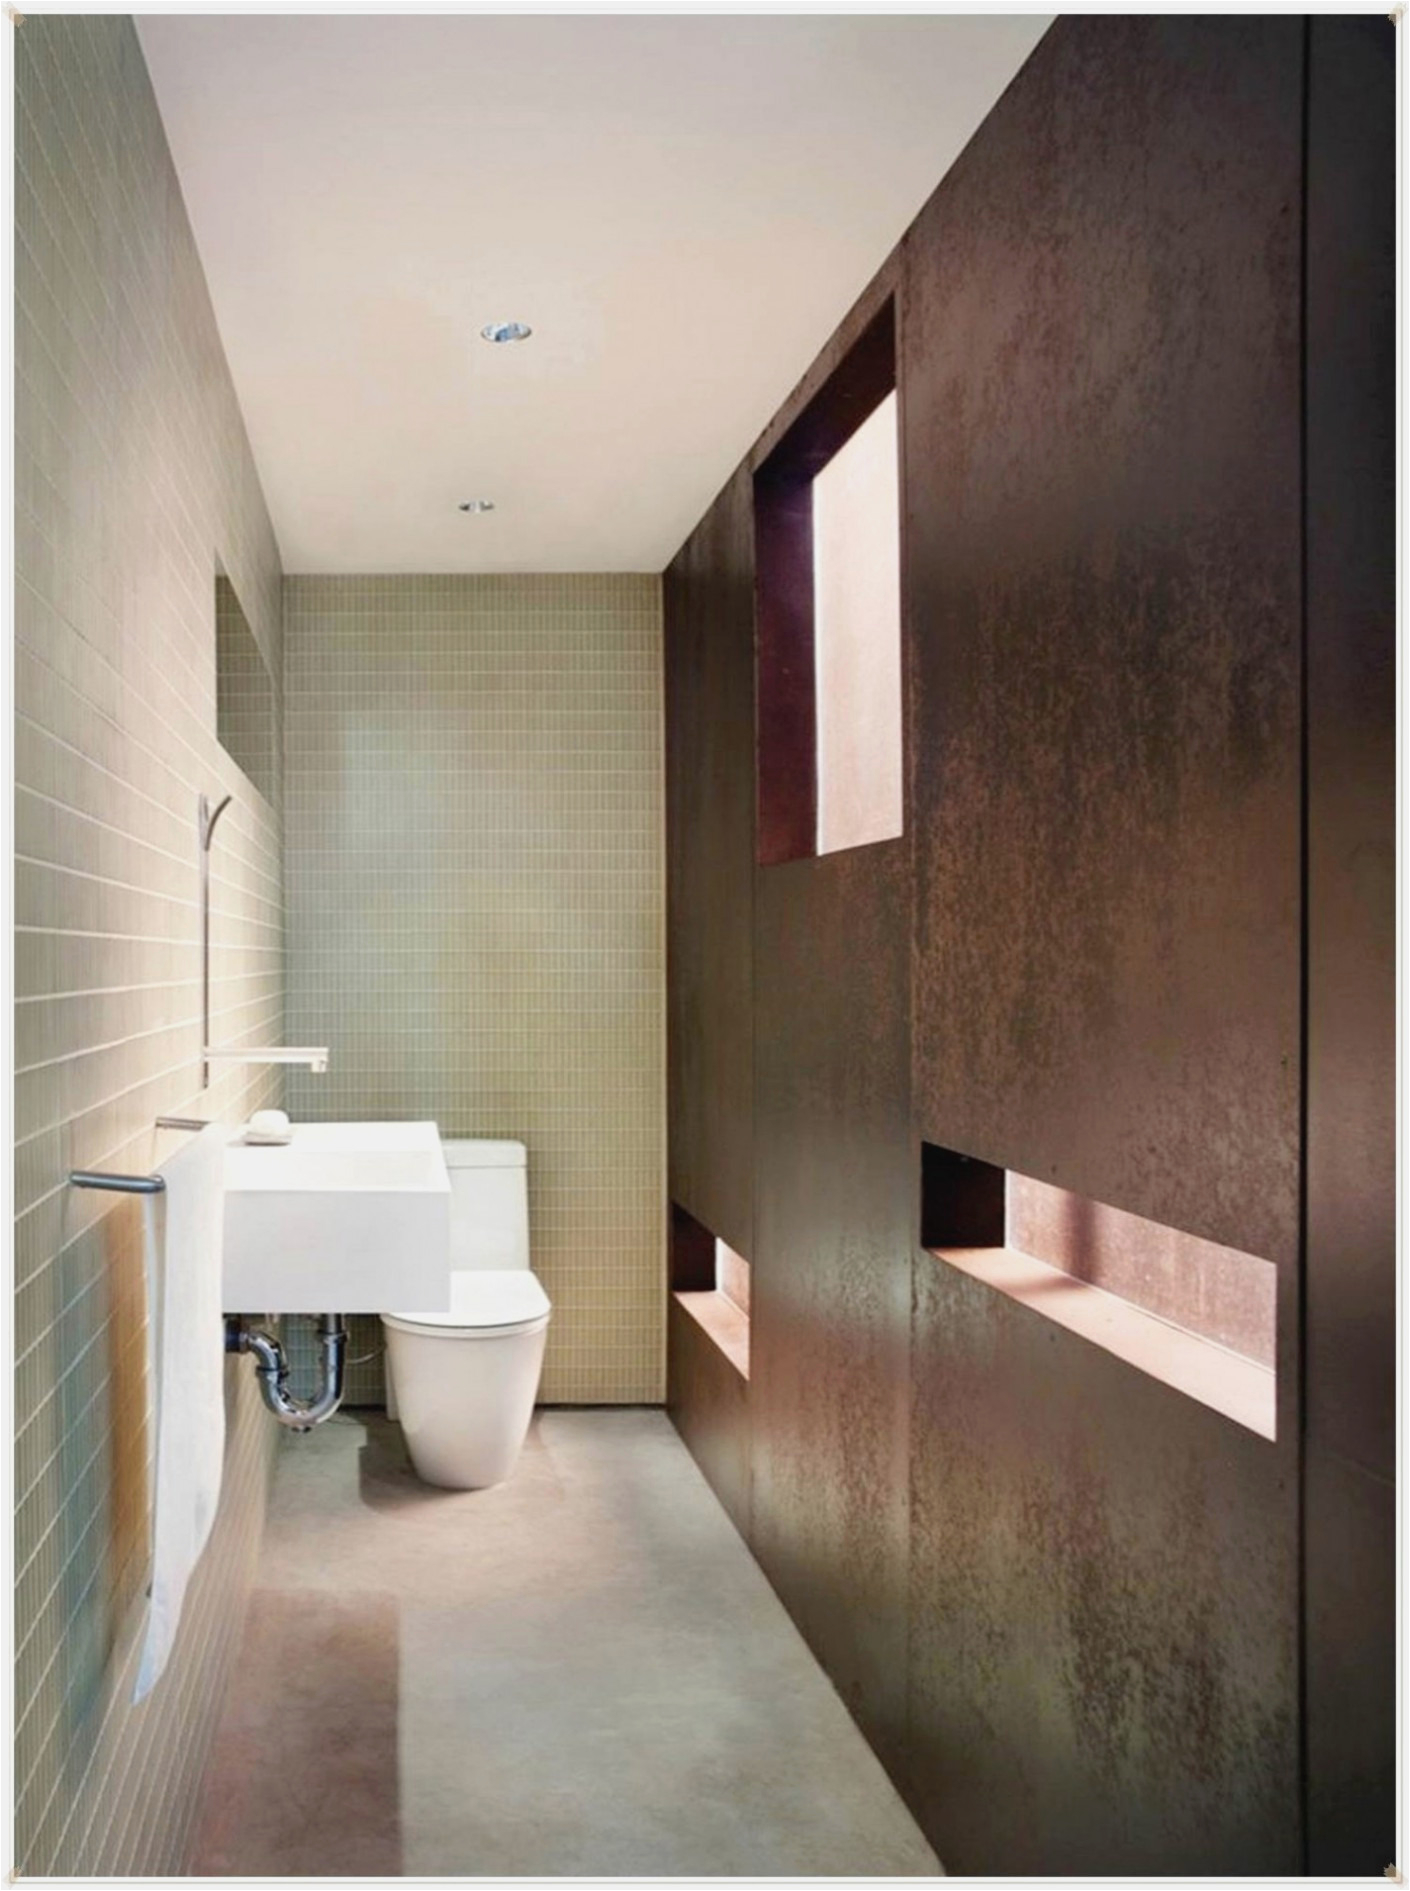 Design-leuchten Für Badezimmer Spiegel Für Badezimmer Aukin